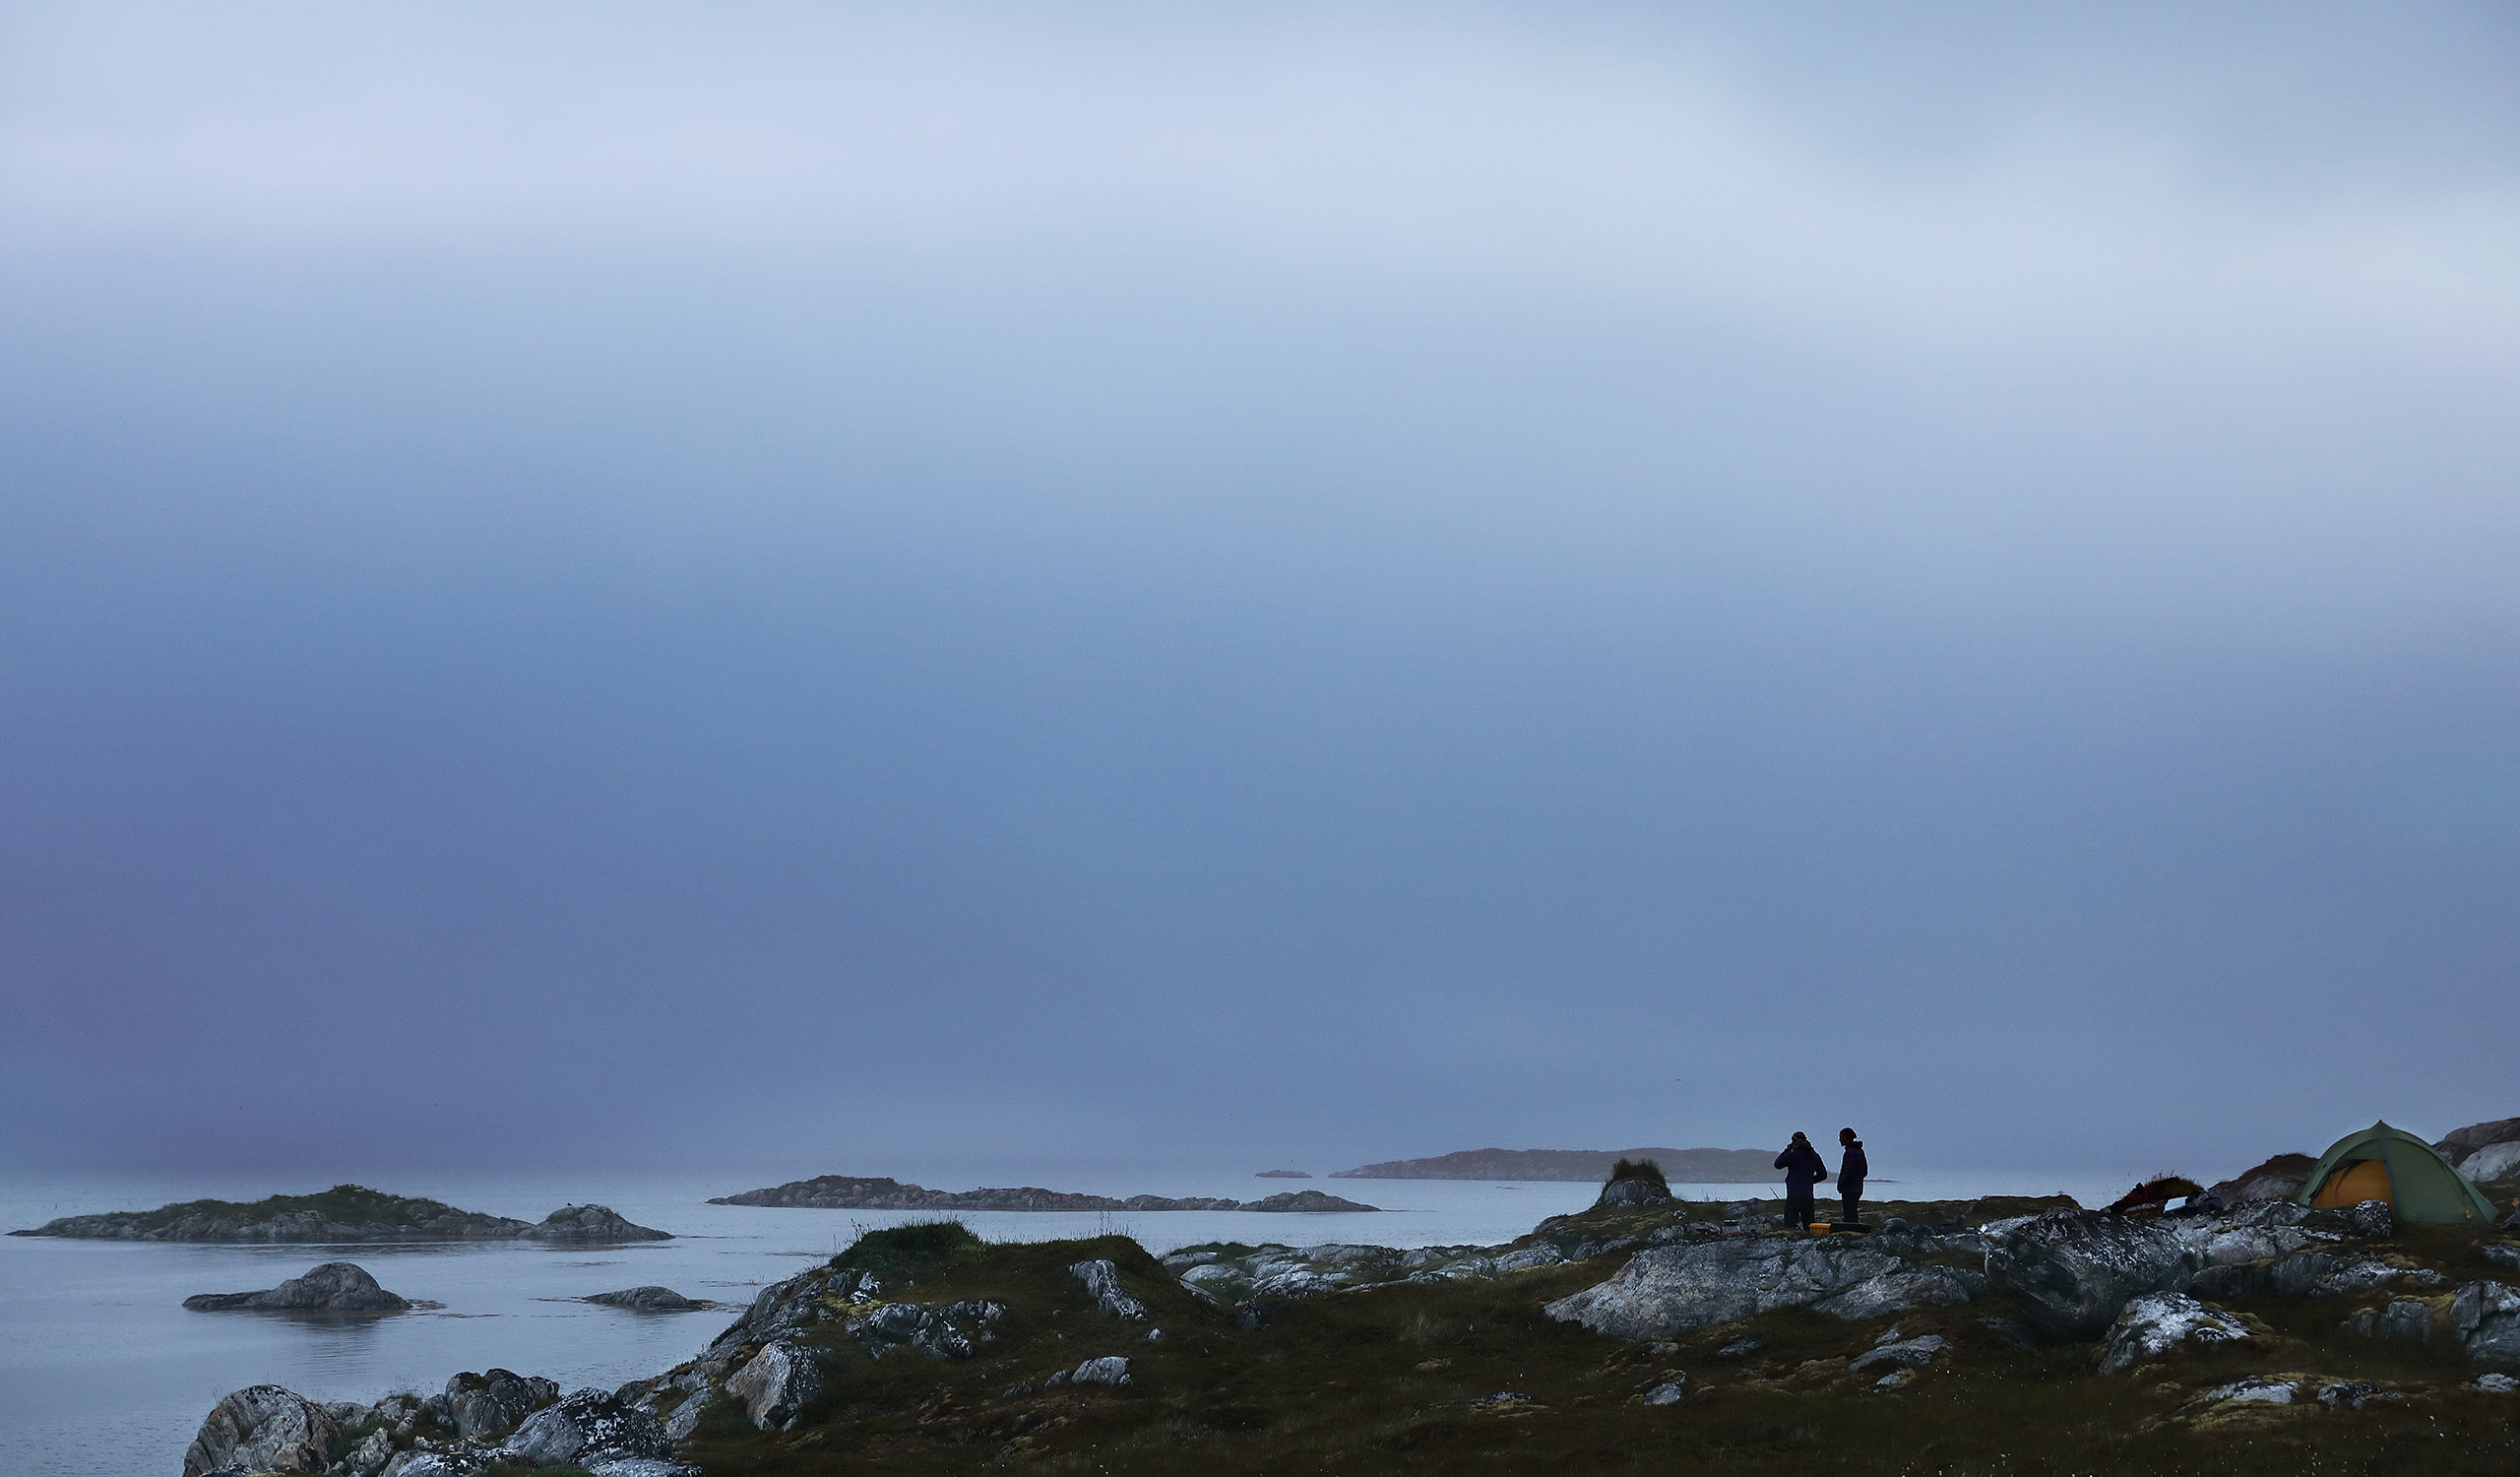 Das mystische Wetter der norwegischen Arktis sorgt für eine emotionale Atmosphäre für jeden, der bereit ist, sich in die Ferne zu wagen. Planetvisible hat eine 14-tägige Reise in die nördliche norwegische Arktis unternommen, um die Fähigkeit der Bretter zu testen, den Wellengang des offenen Ozeans mit mehr als 130 kg an Bord zu überstehen. Fotografie von Justin Hession Fotografie